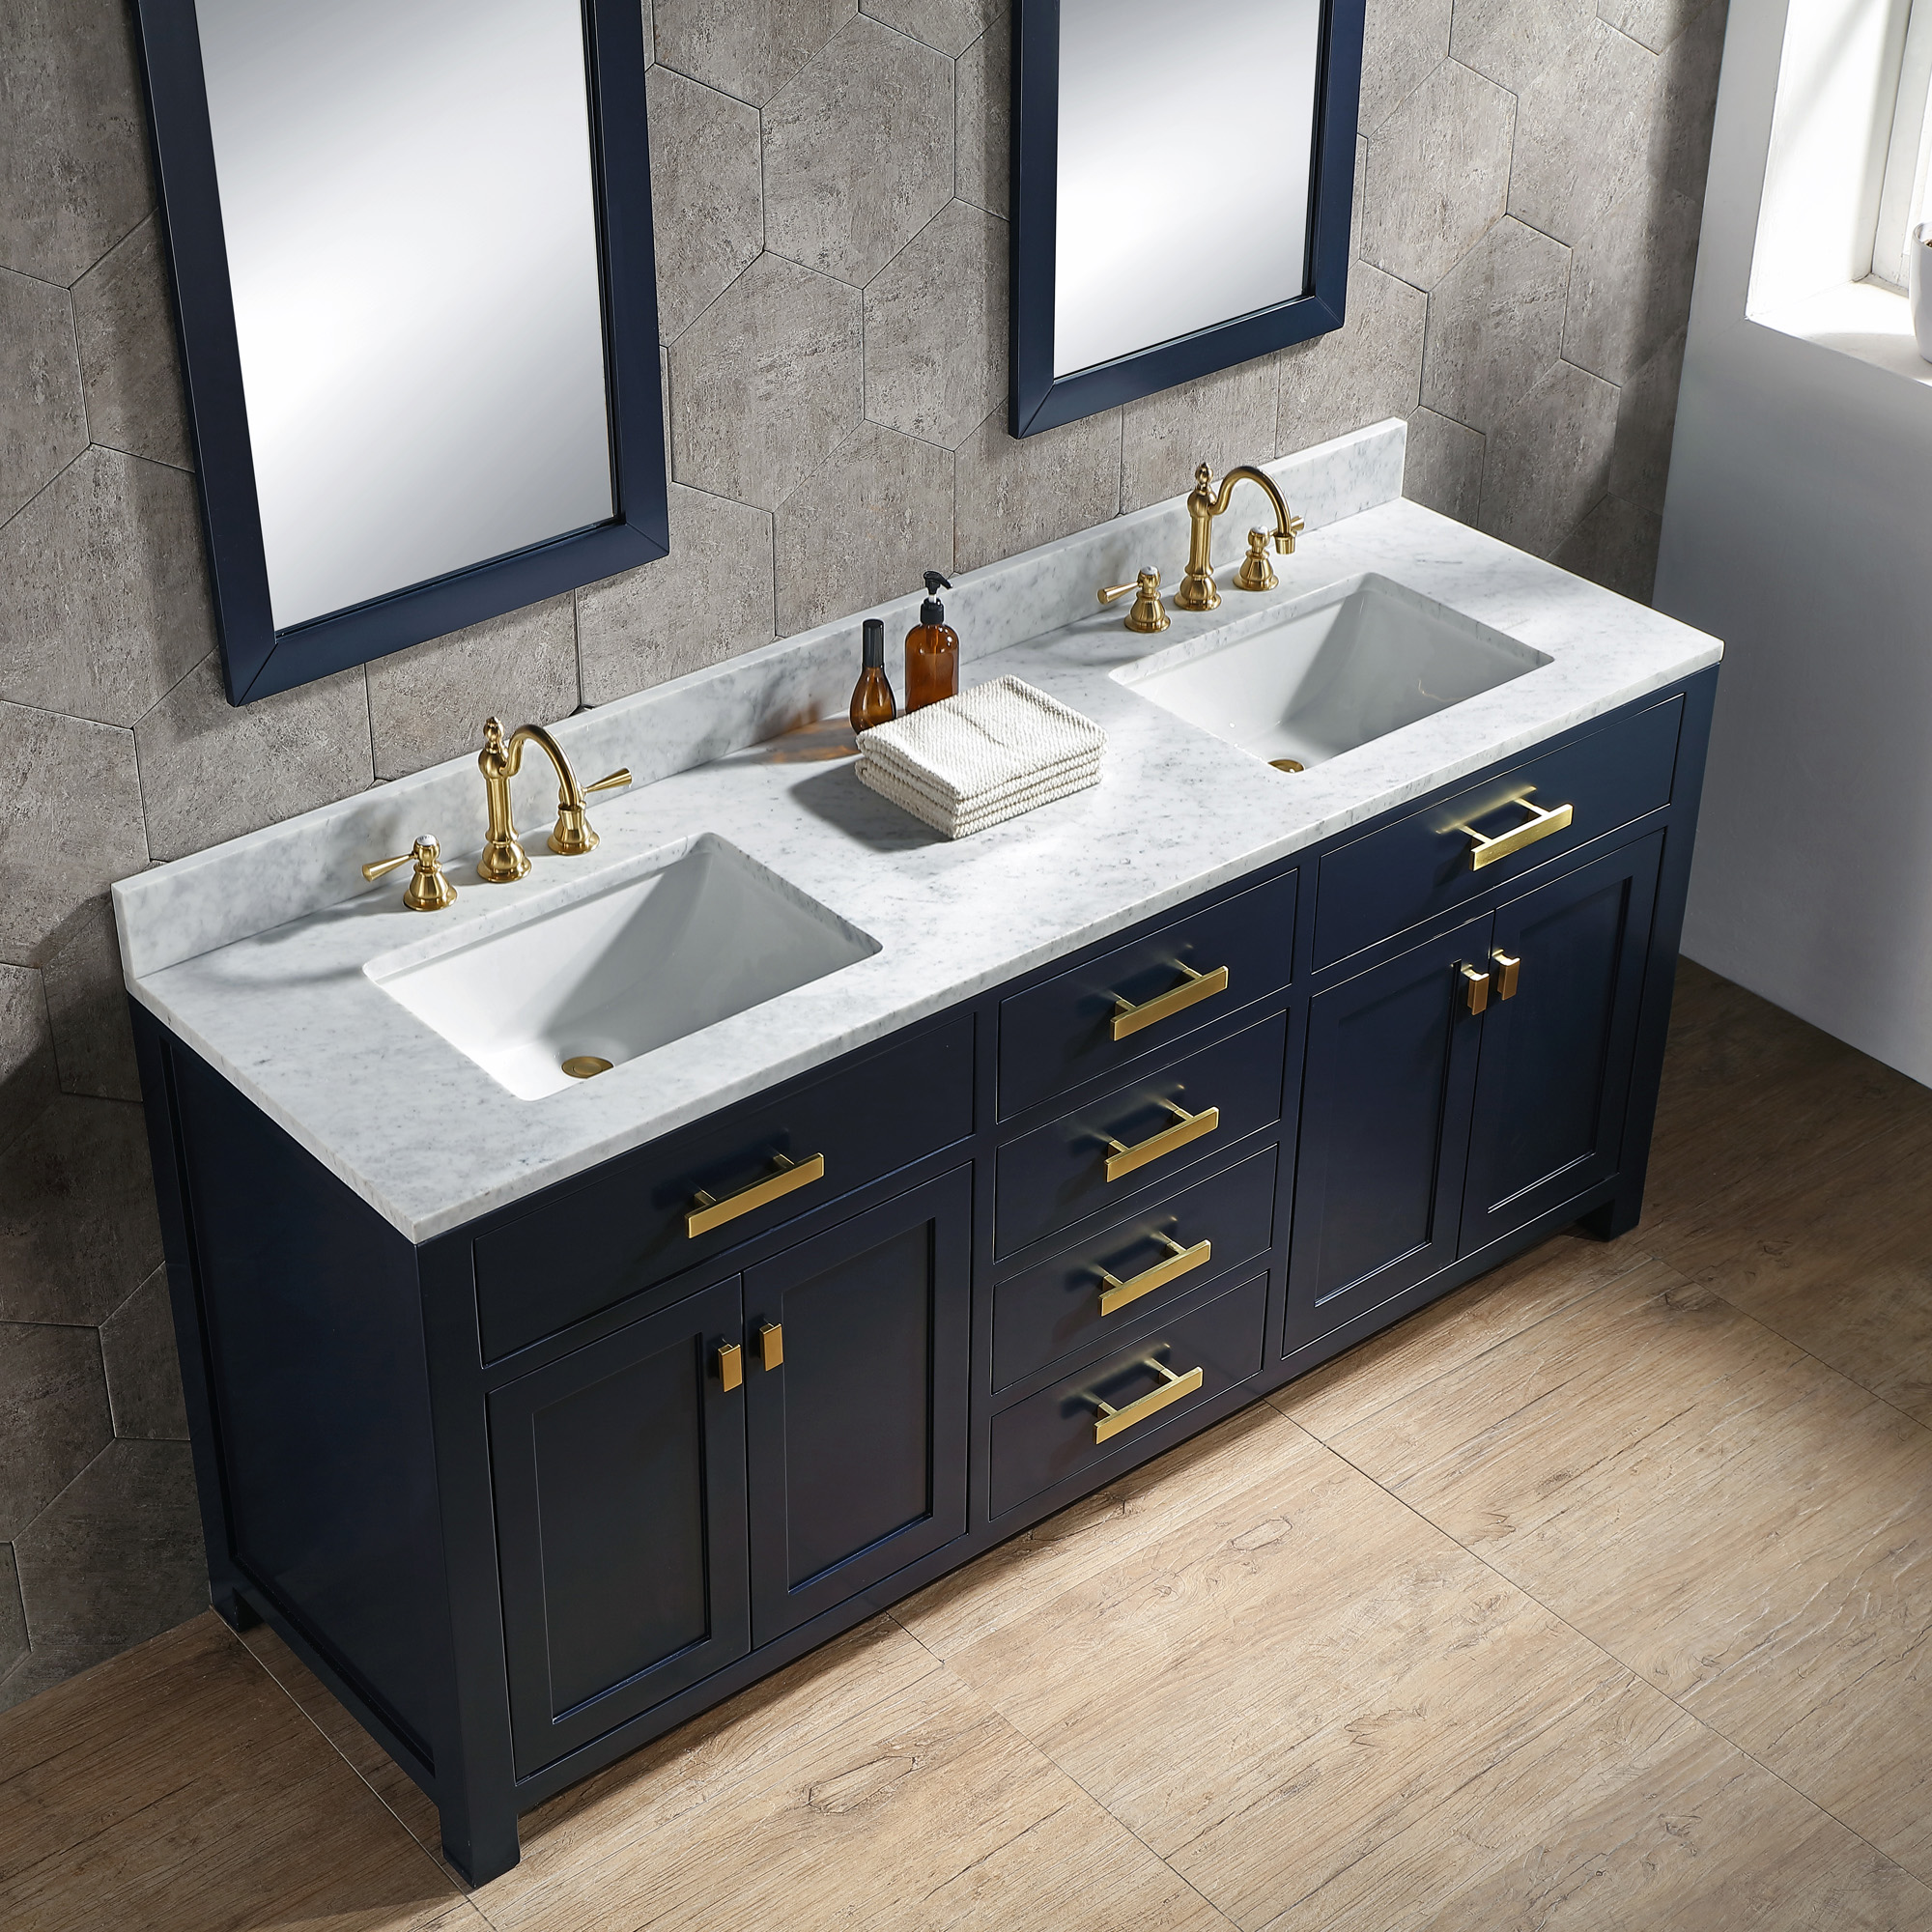 Bathroom Vanities Kitchen Cabinets - Image to u